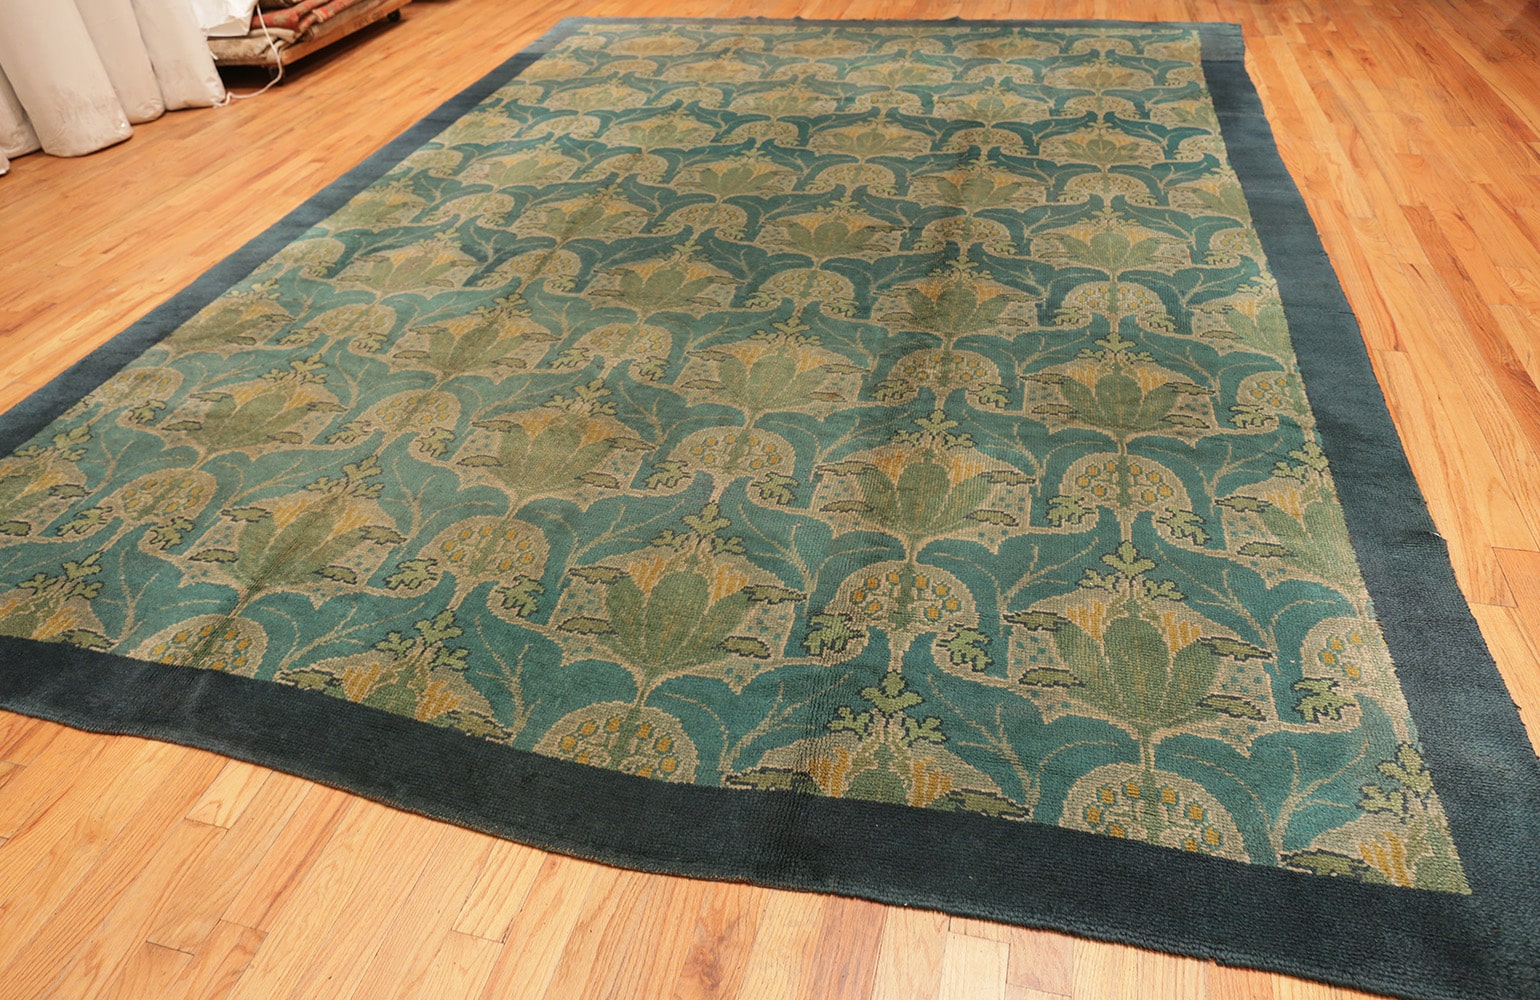 Antique donegal Carpet - # 56513